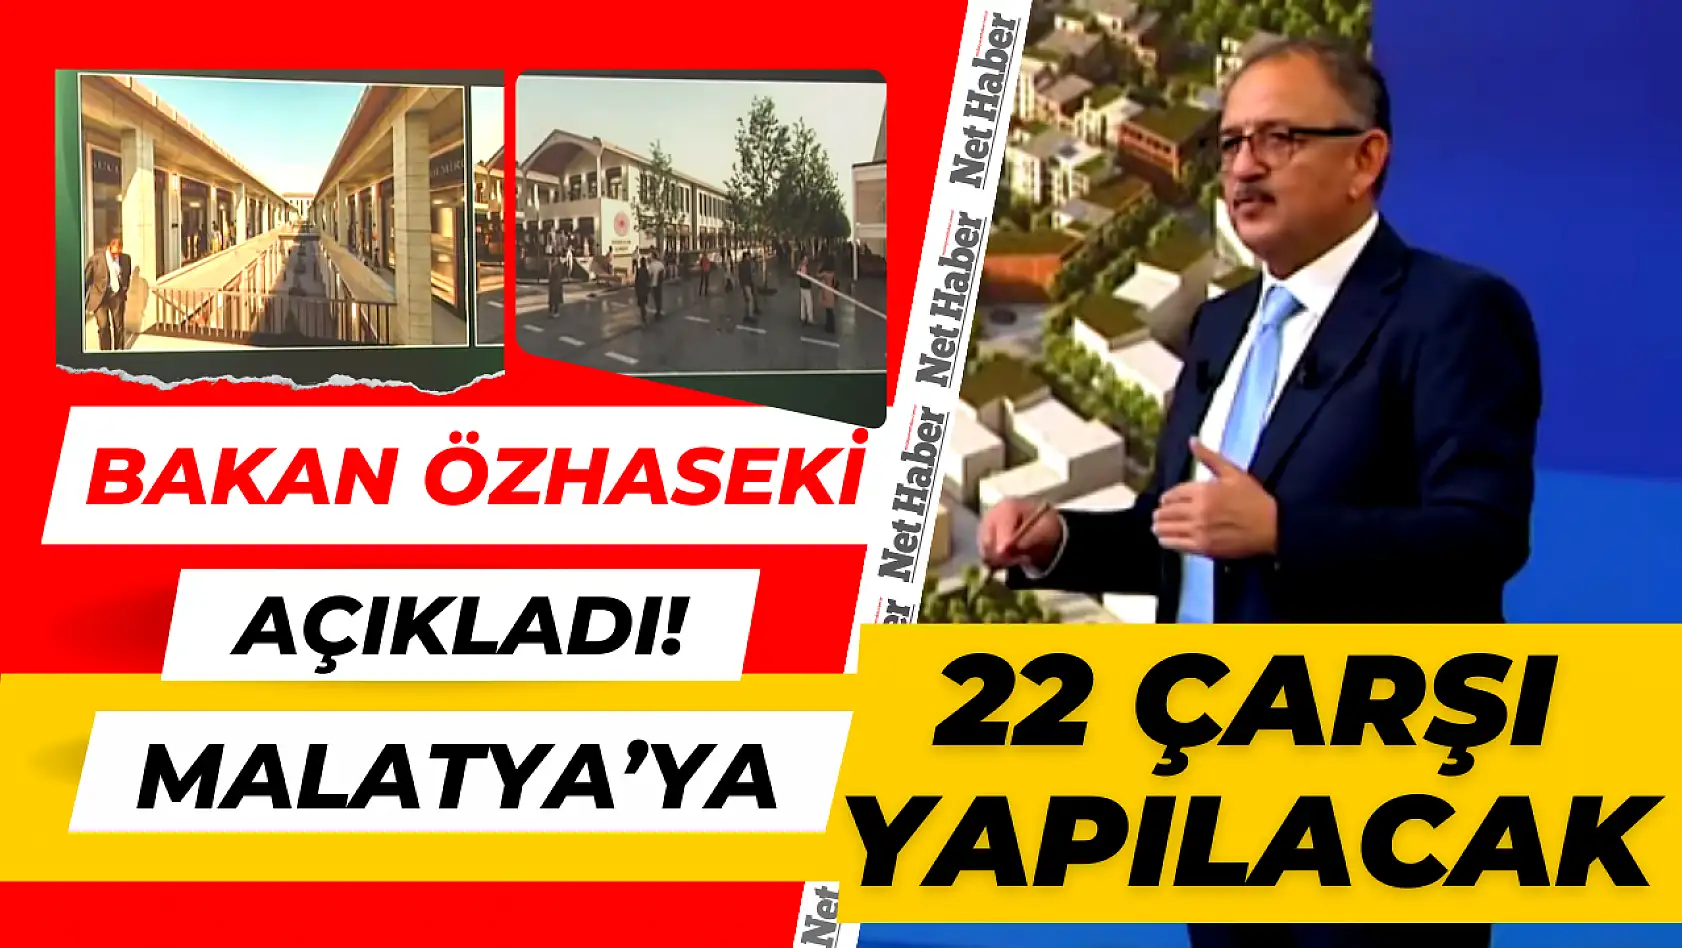 Bakan Özhaseki açıkladı! Malatya'ya 22 çarşı yapılacak!